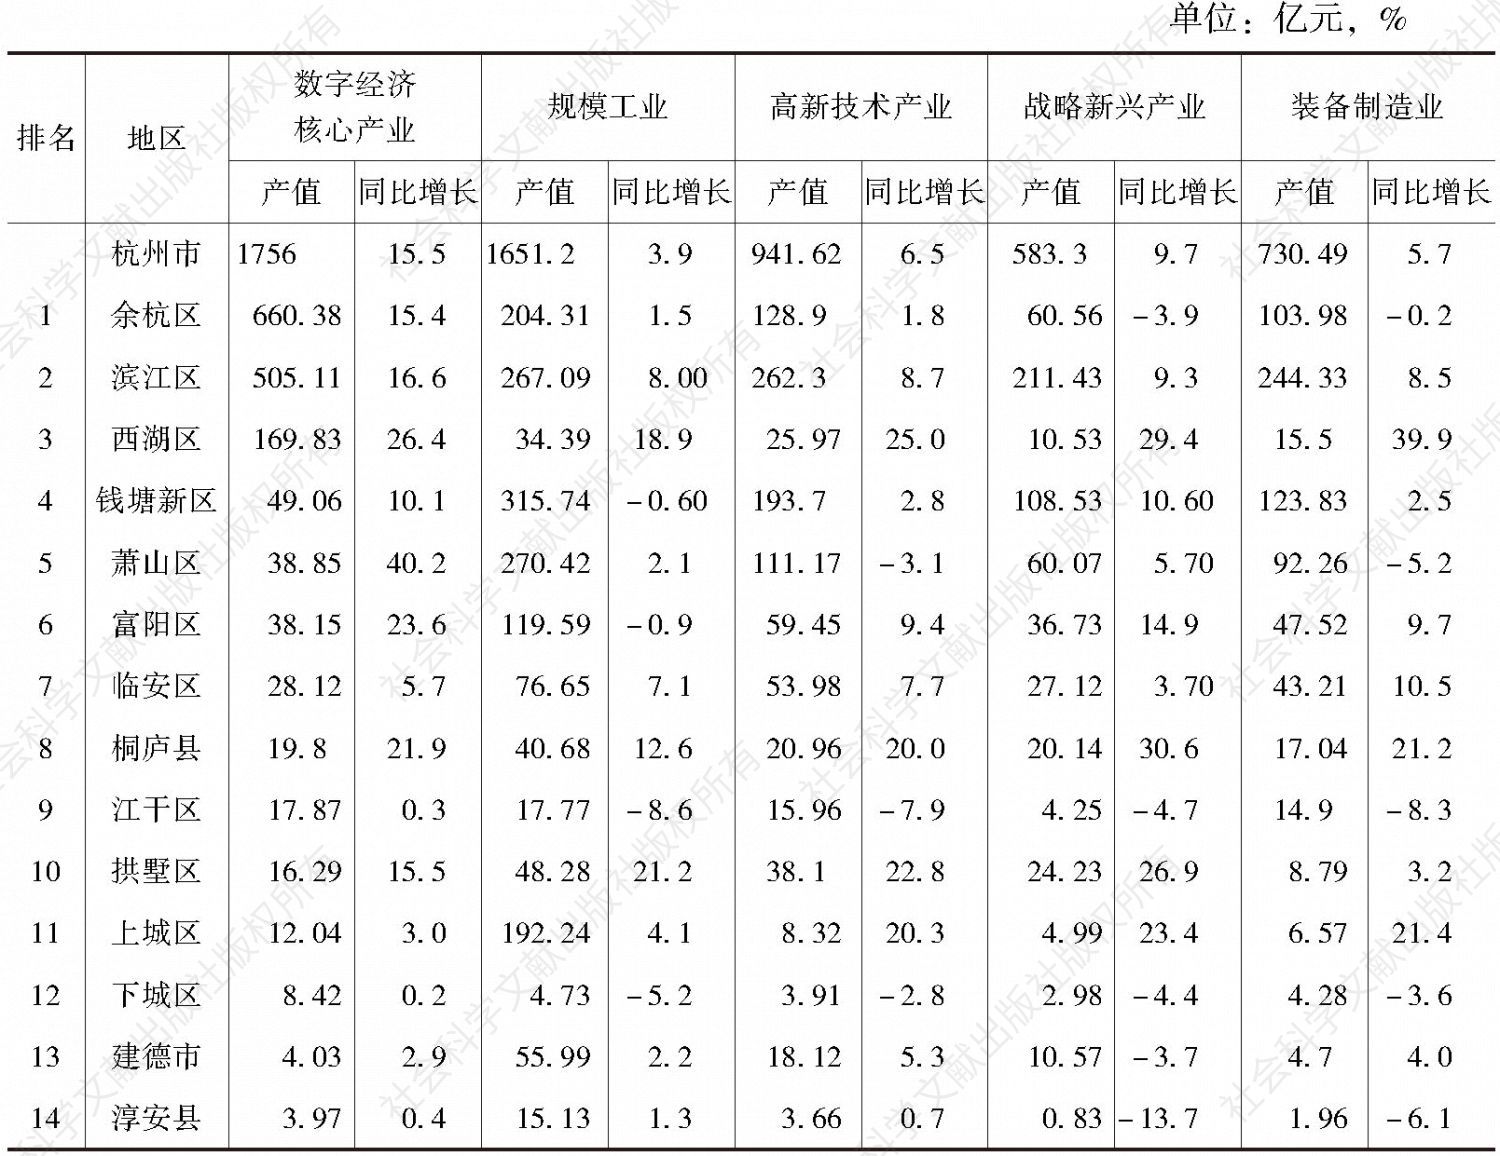 表4 2019年上半年杭州市产业发展排名情况